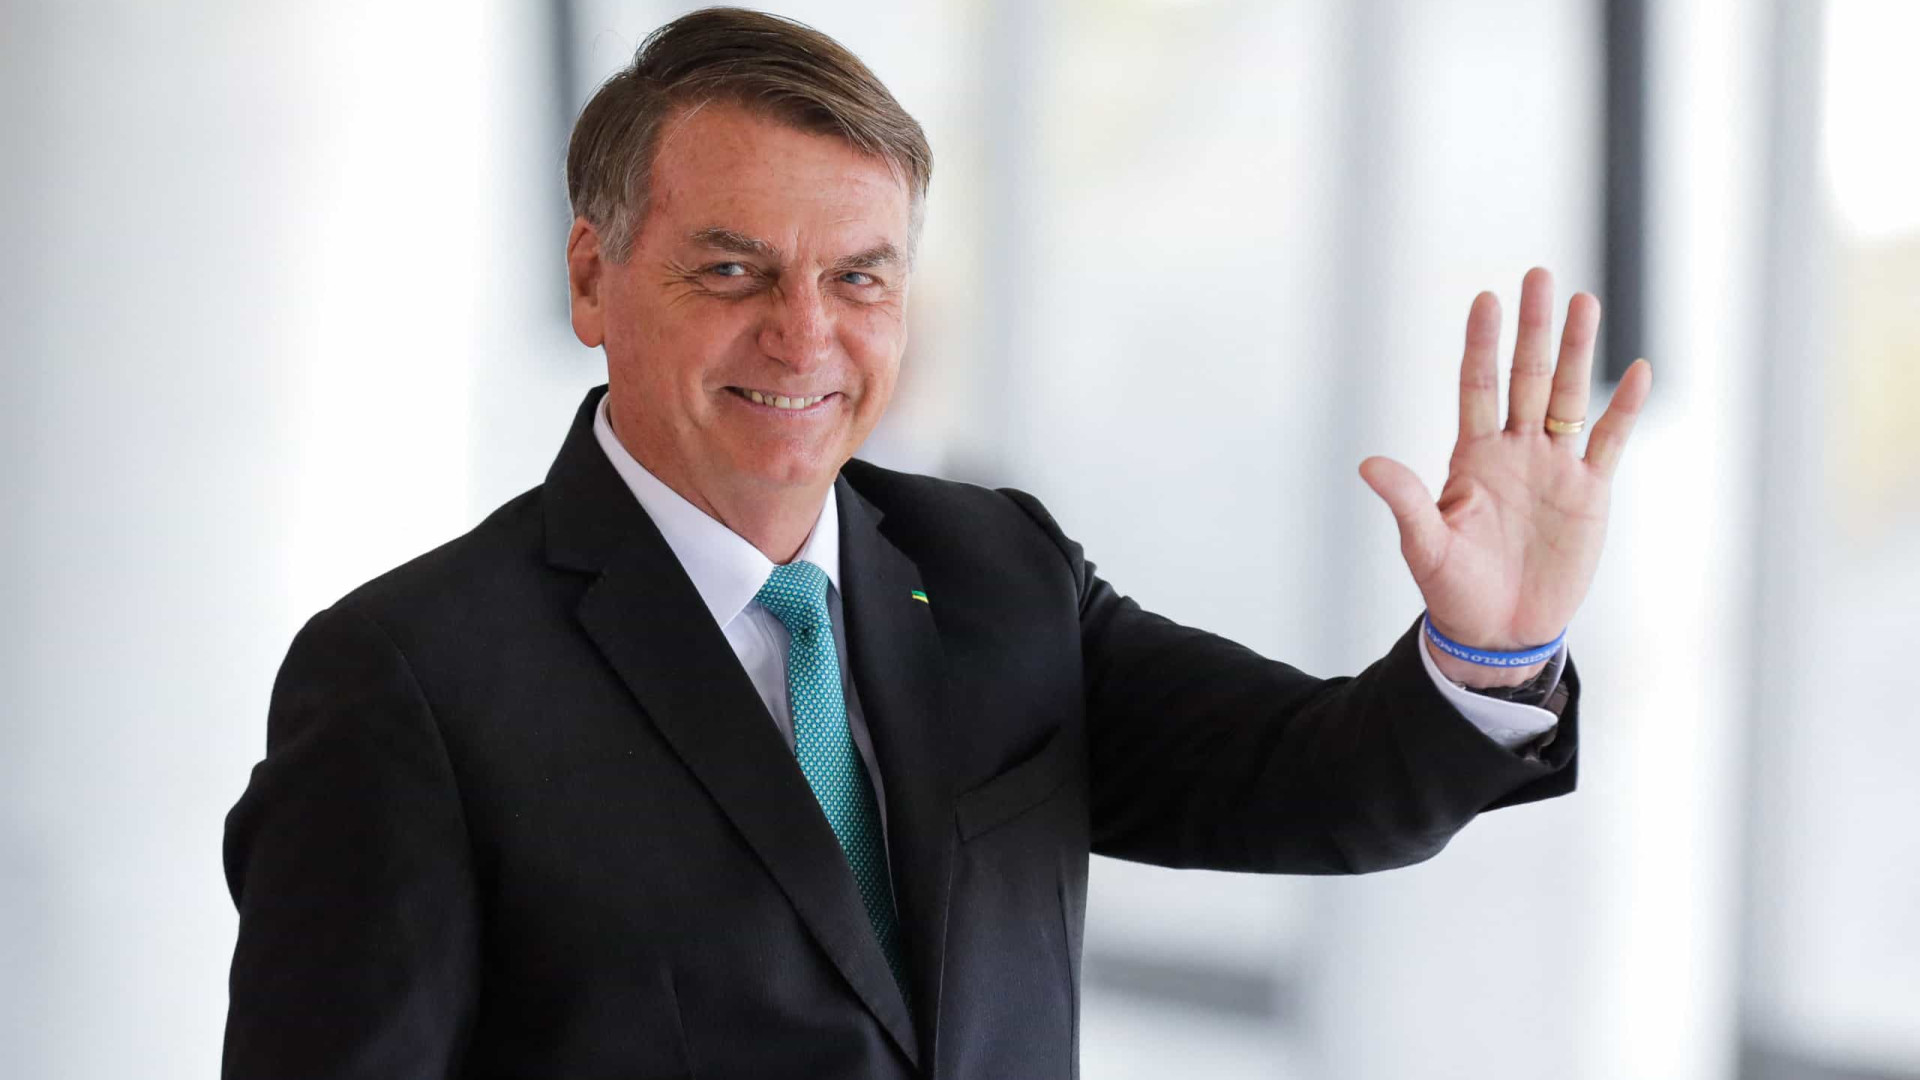 Evangélicos deixam de lado defesa a Bolsonaro, mas mantêm